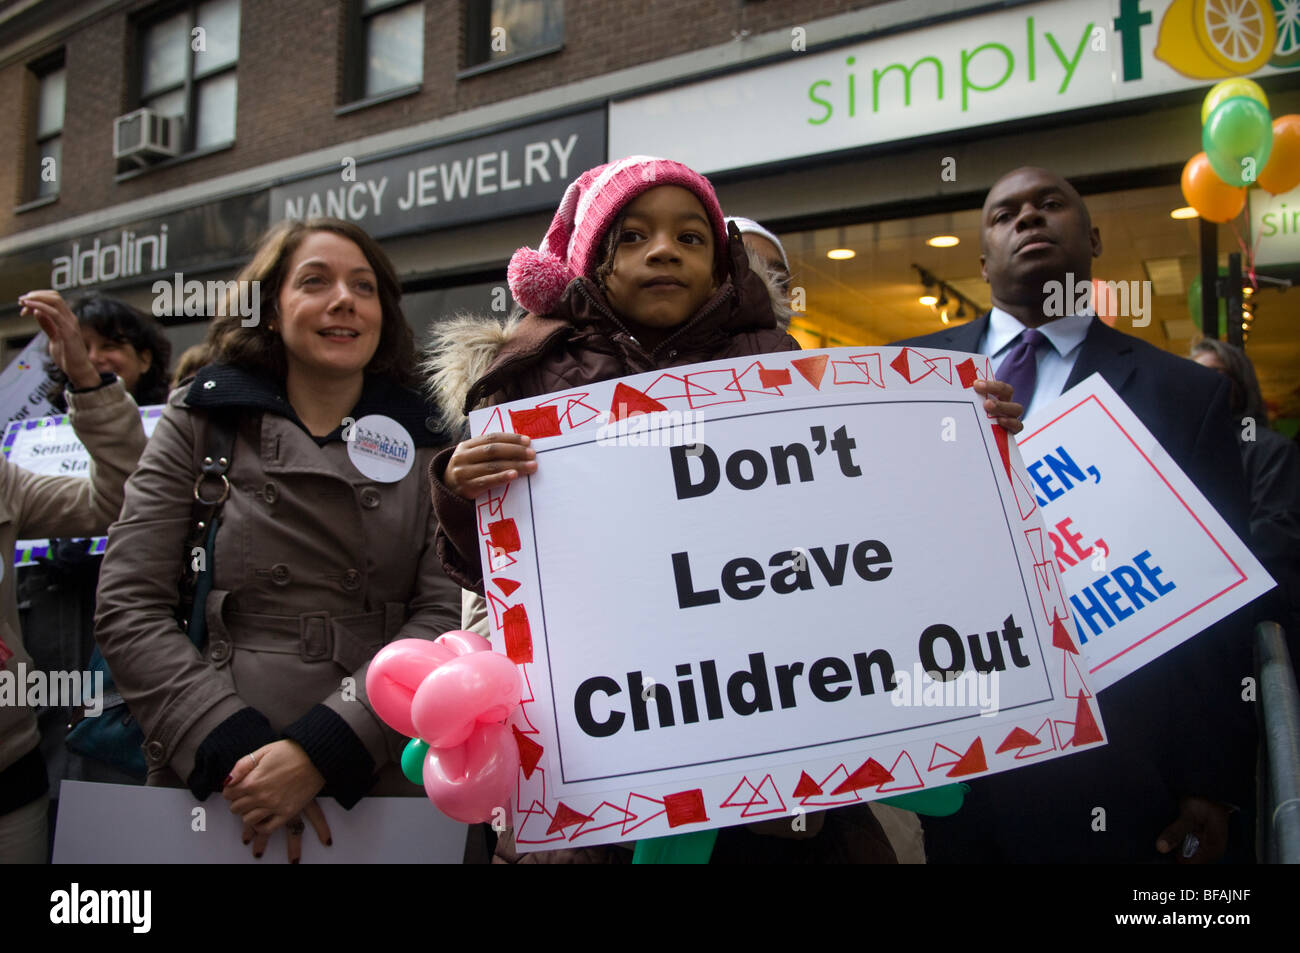 Les parents, les enfants et les citoyens concernés manifestation à New York pour des soins de santé pour enfants Banque D'Images